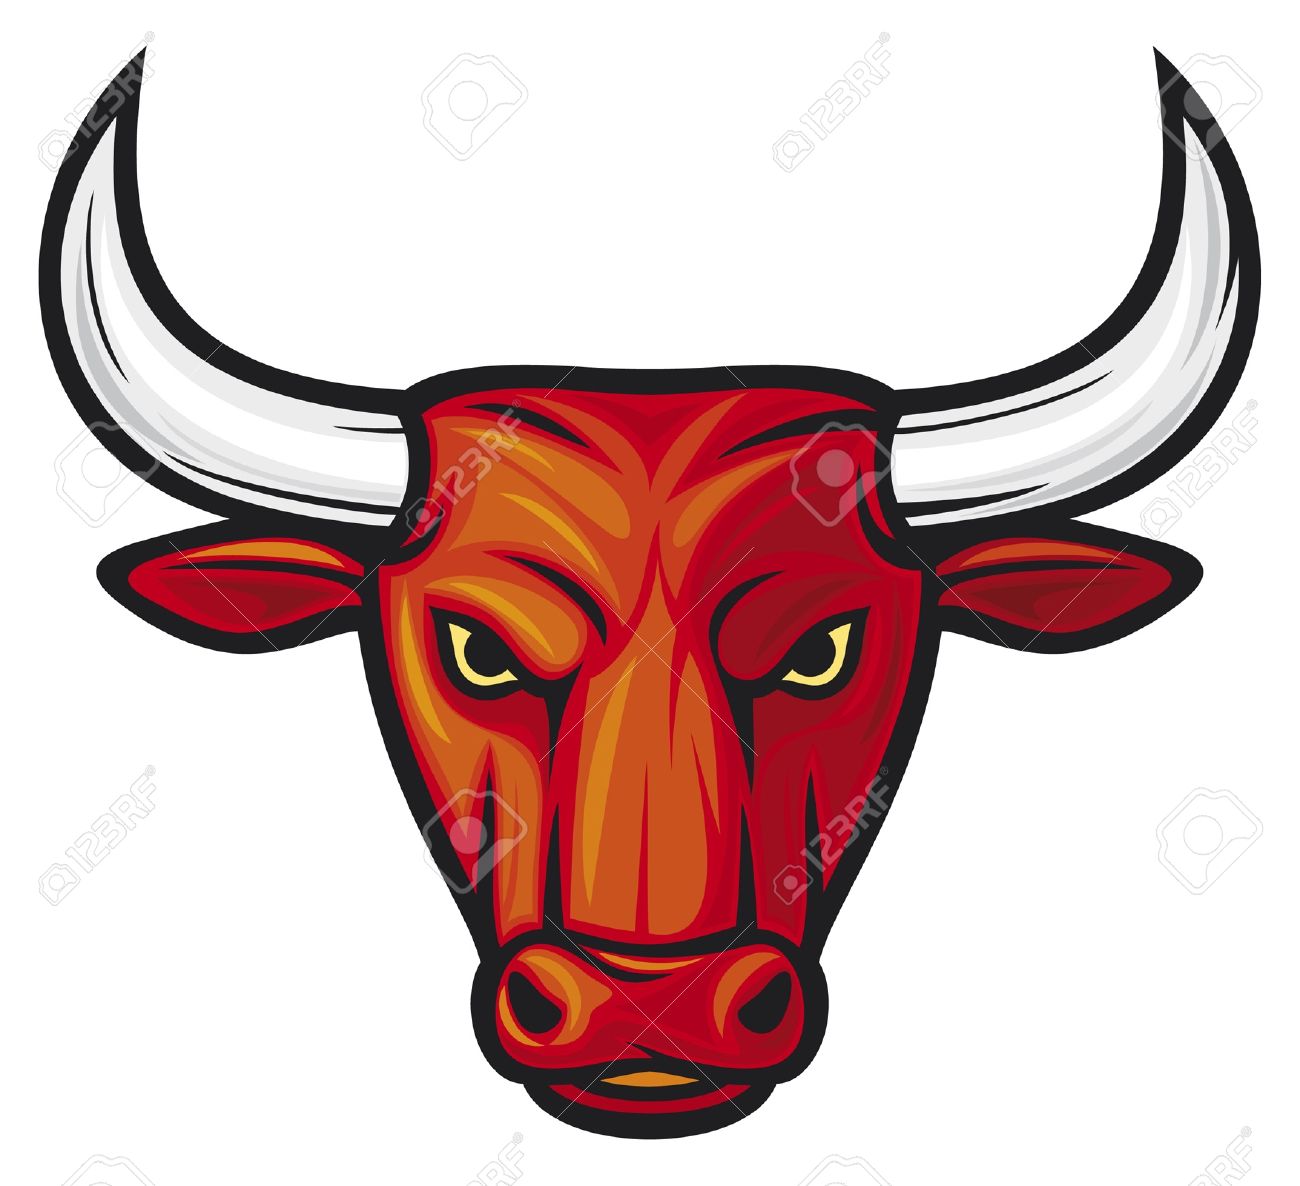 Bulls clipart #15, Download drawings